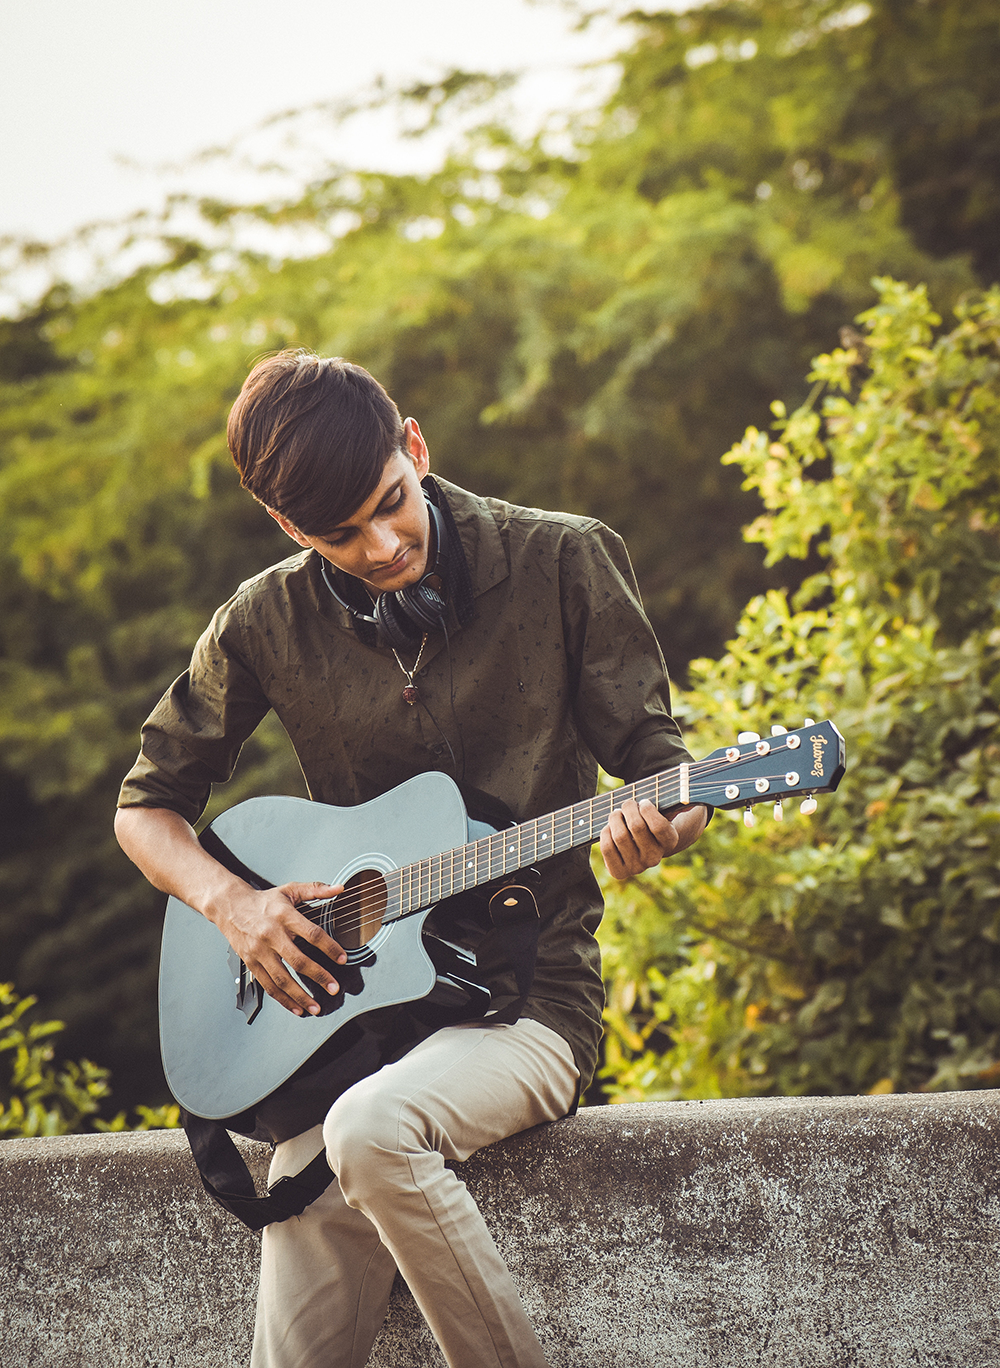 Jongen speelt gitaar in park